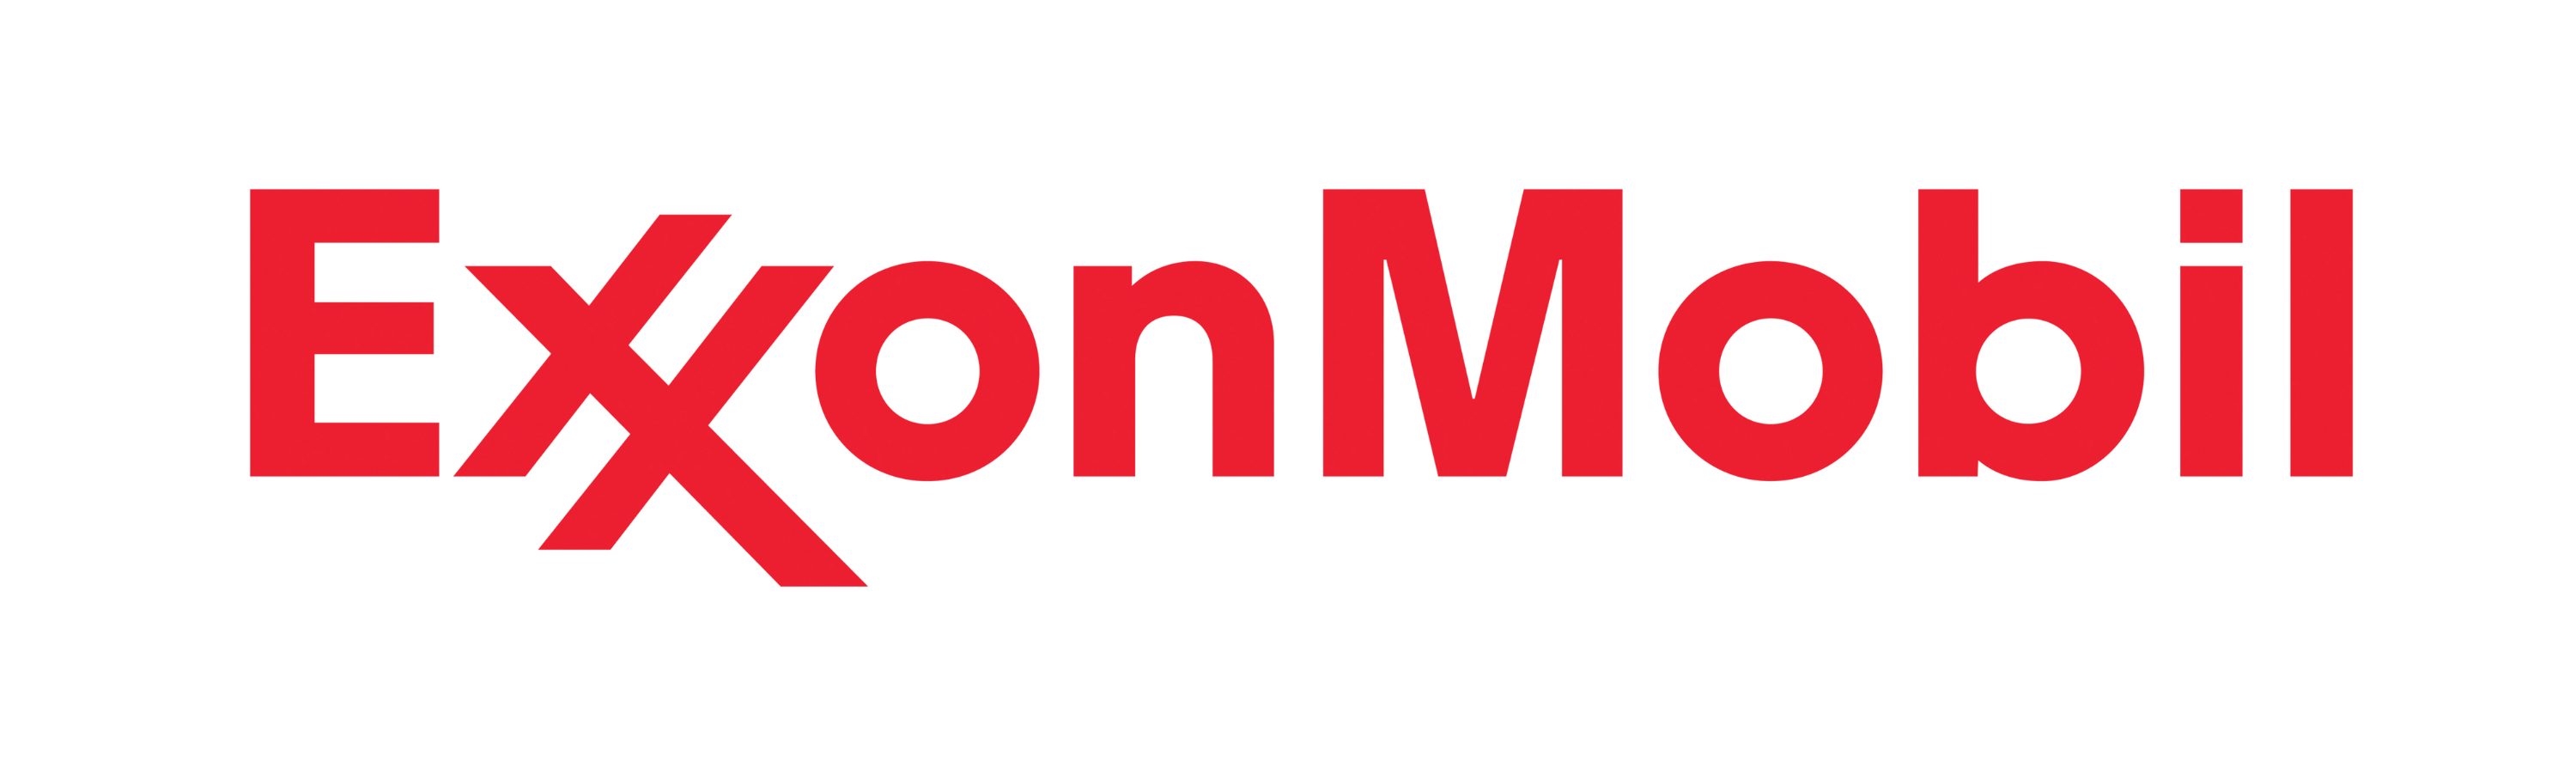 ExxonMobil-logo2-RGB